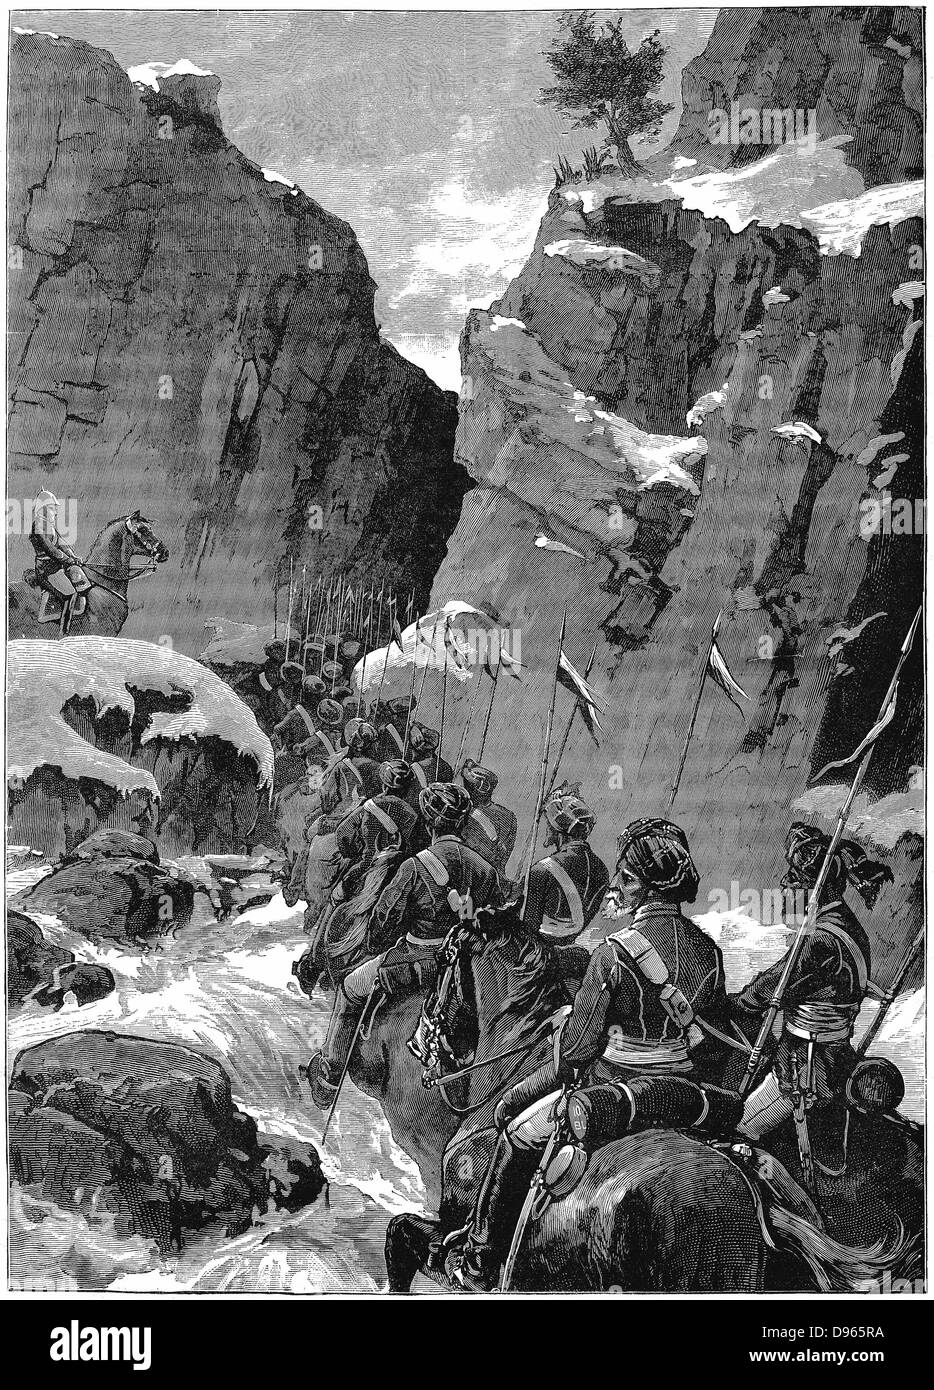 Zweite Anglo-Afghan Krieg (1878-1880): 10 Bengal Lancers Aushandlung der Jugdulluk Pass von einem britischen Offizier, Dezember 1879 betreut. Holzstich. Stockfoto